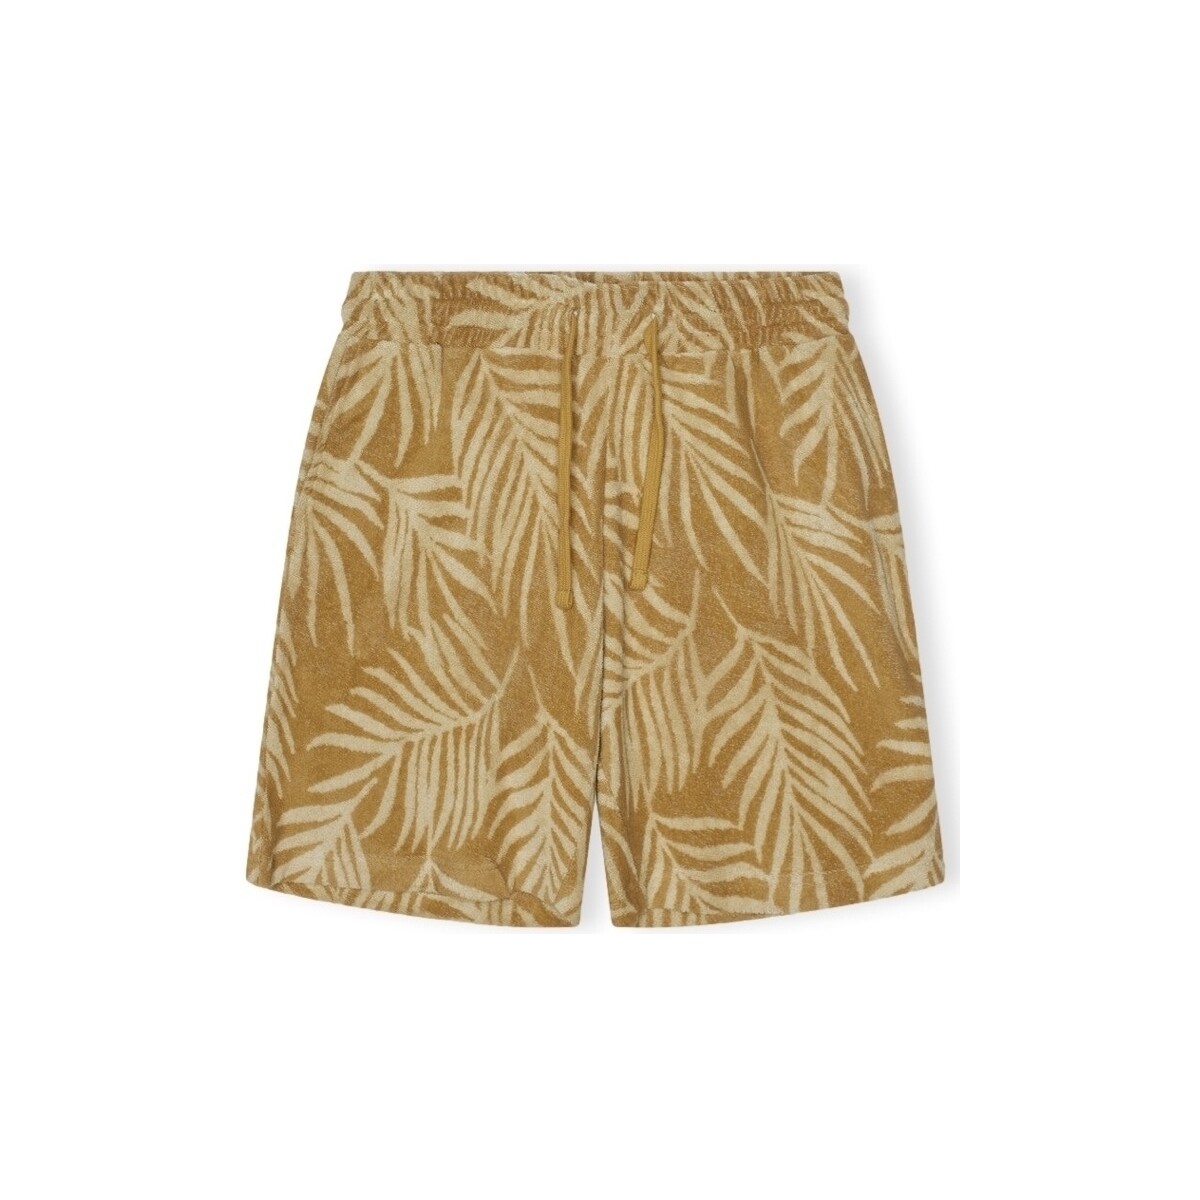 Textiel Heren Korte broeken / Bermuda's Revolution Terry Shorts - Khaki Beige